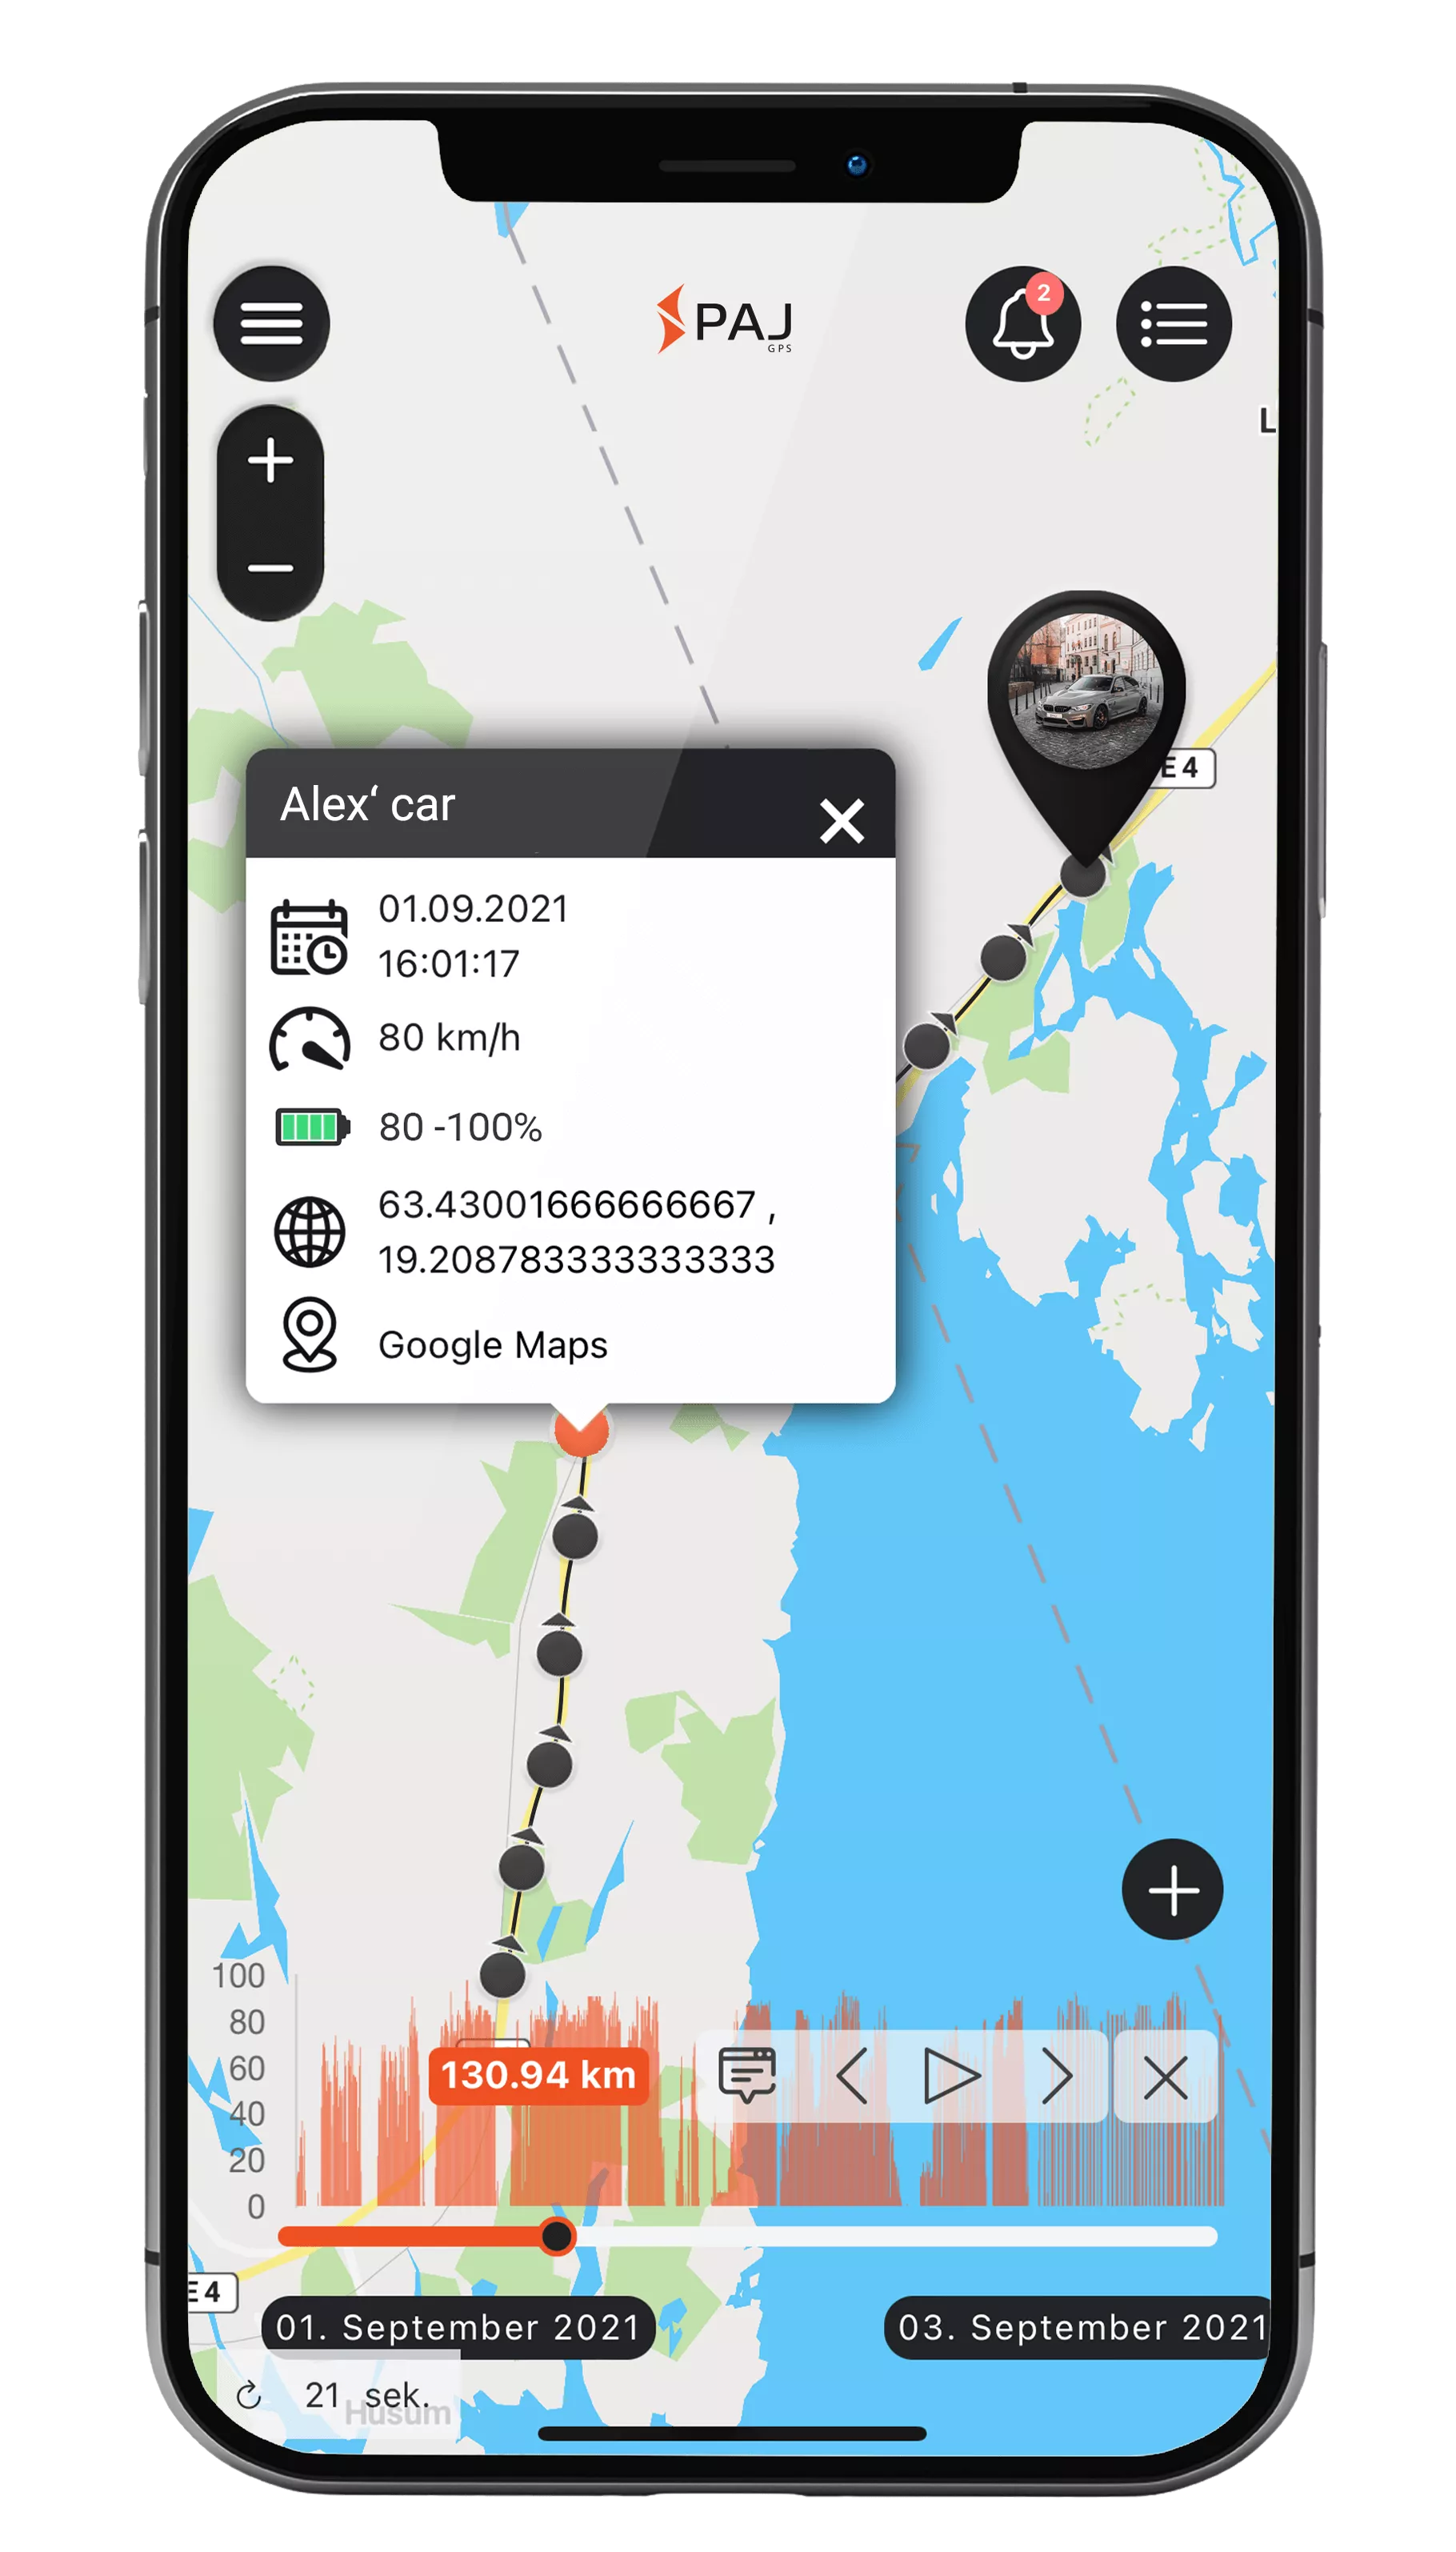 Traceur GPS VEHICLE Finder 4G 1.0 pour voitures et motos.